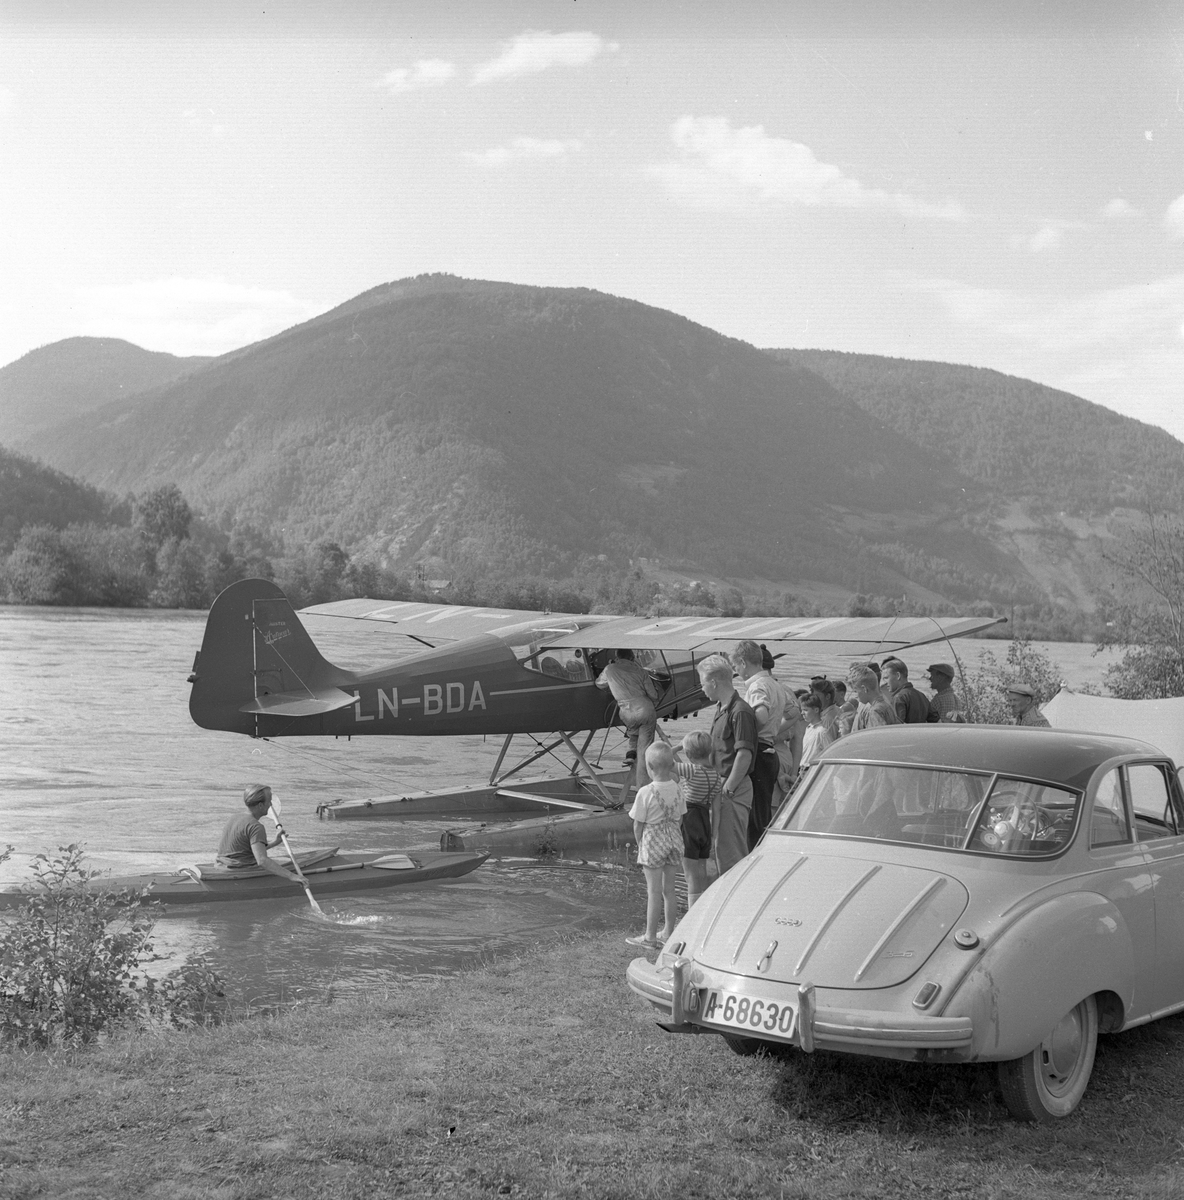 Mann i kajakk og folk som ser på et sjøfly i elva ved Otta. En bil av typen DKW står parkert på elvebredden. Otta, sommeren 1955, campingliv.